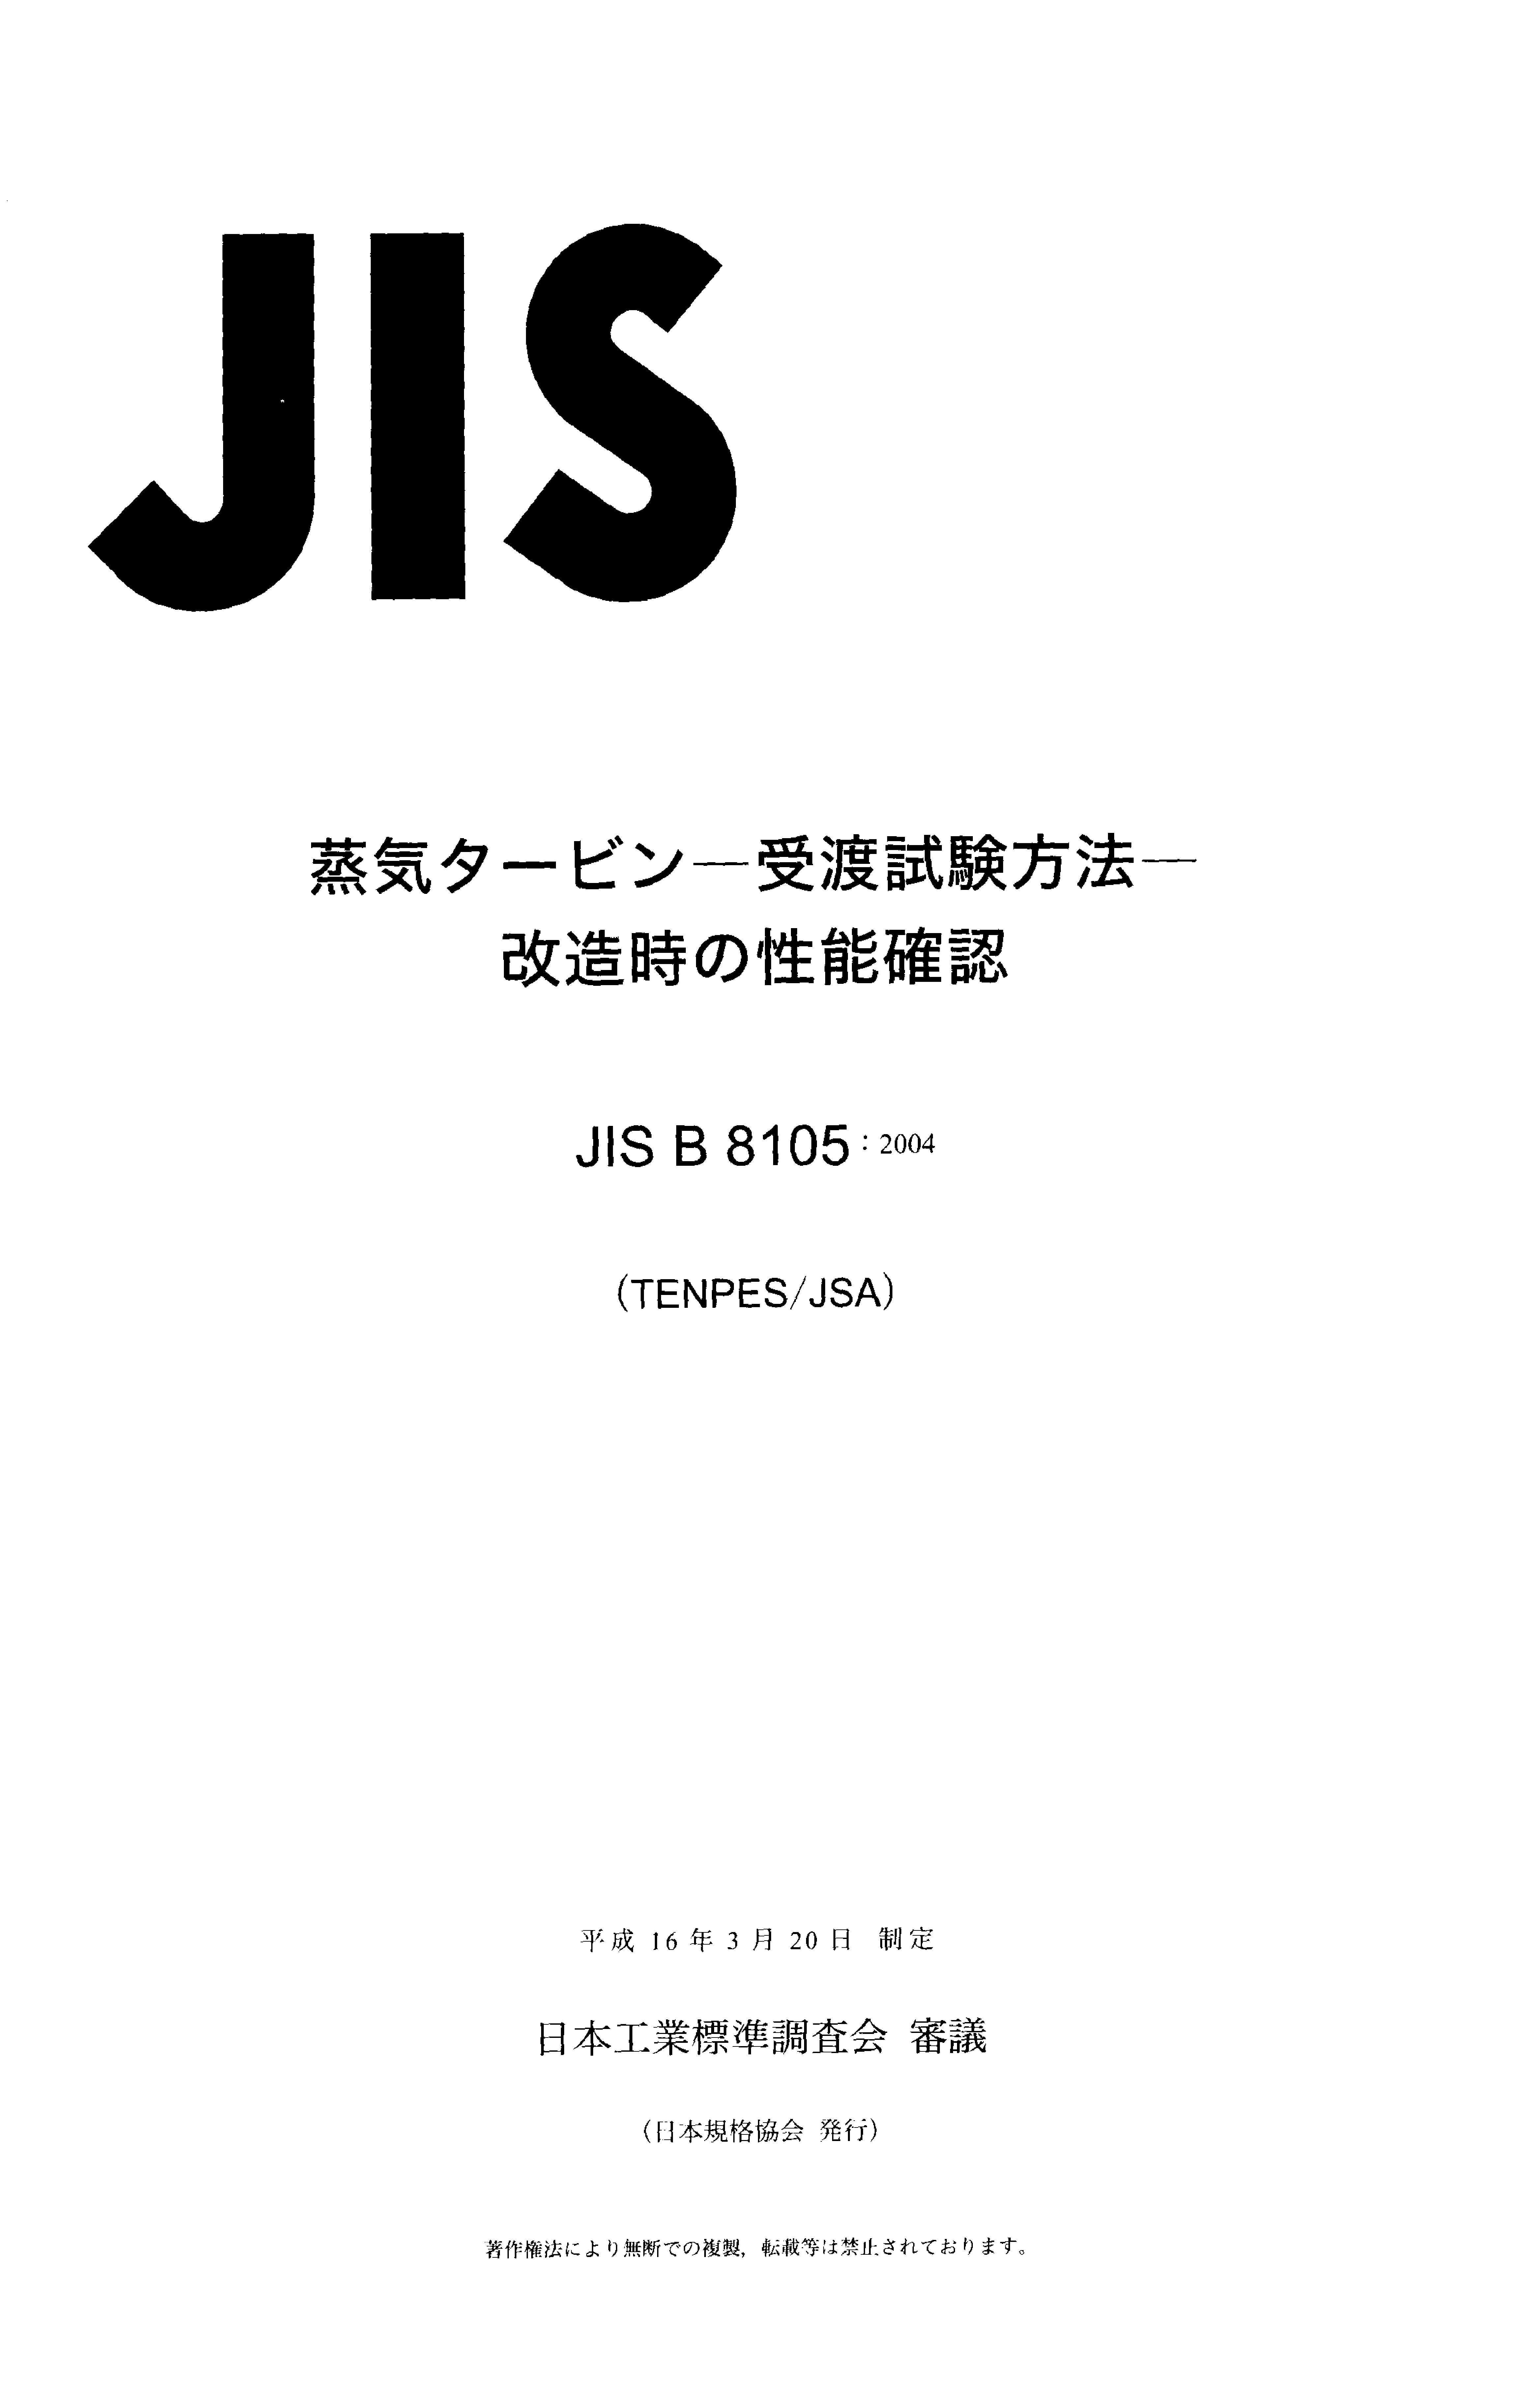 JIS B 8105:2004封面图